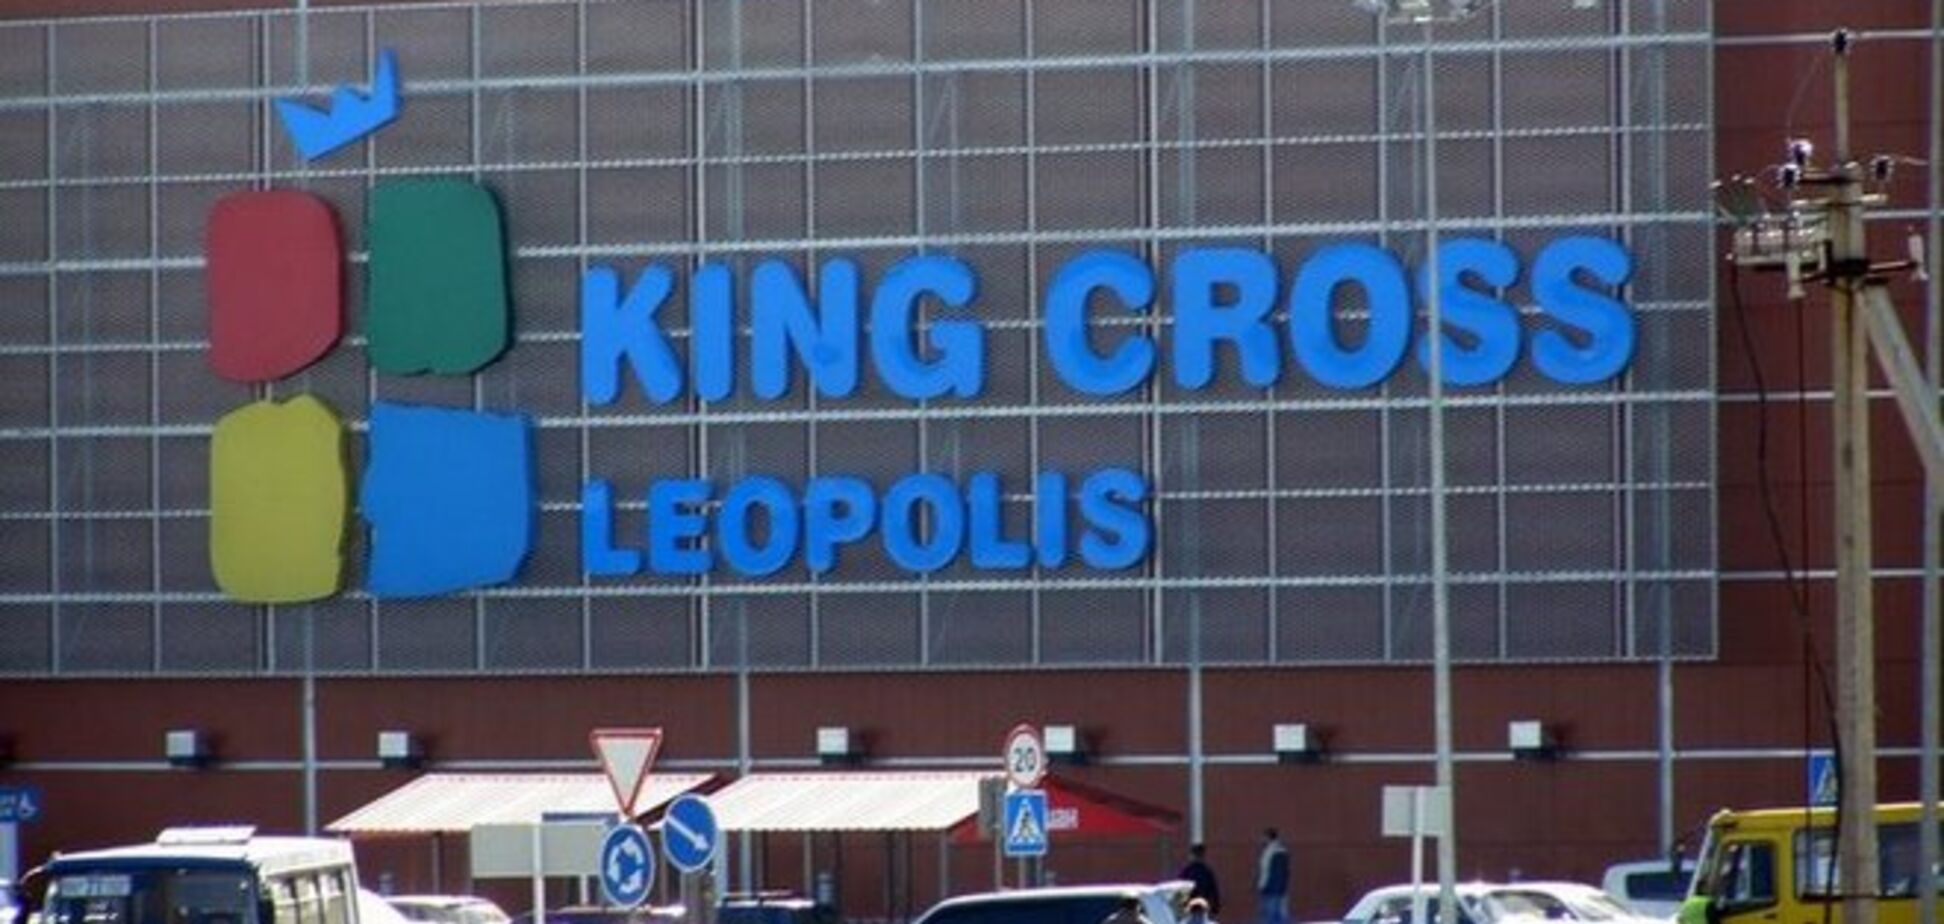 Во Львове  из-за 'минирования' ТРЦ 'King Cross Leopolis' эвакуировали около 2 тыс. человек